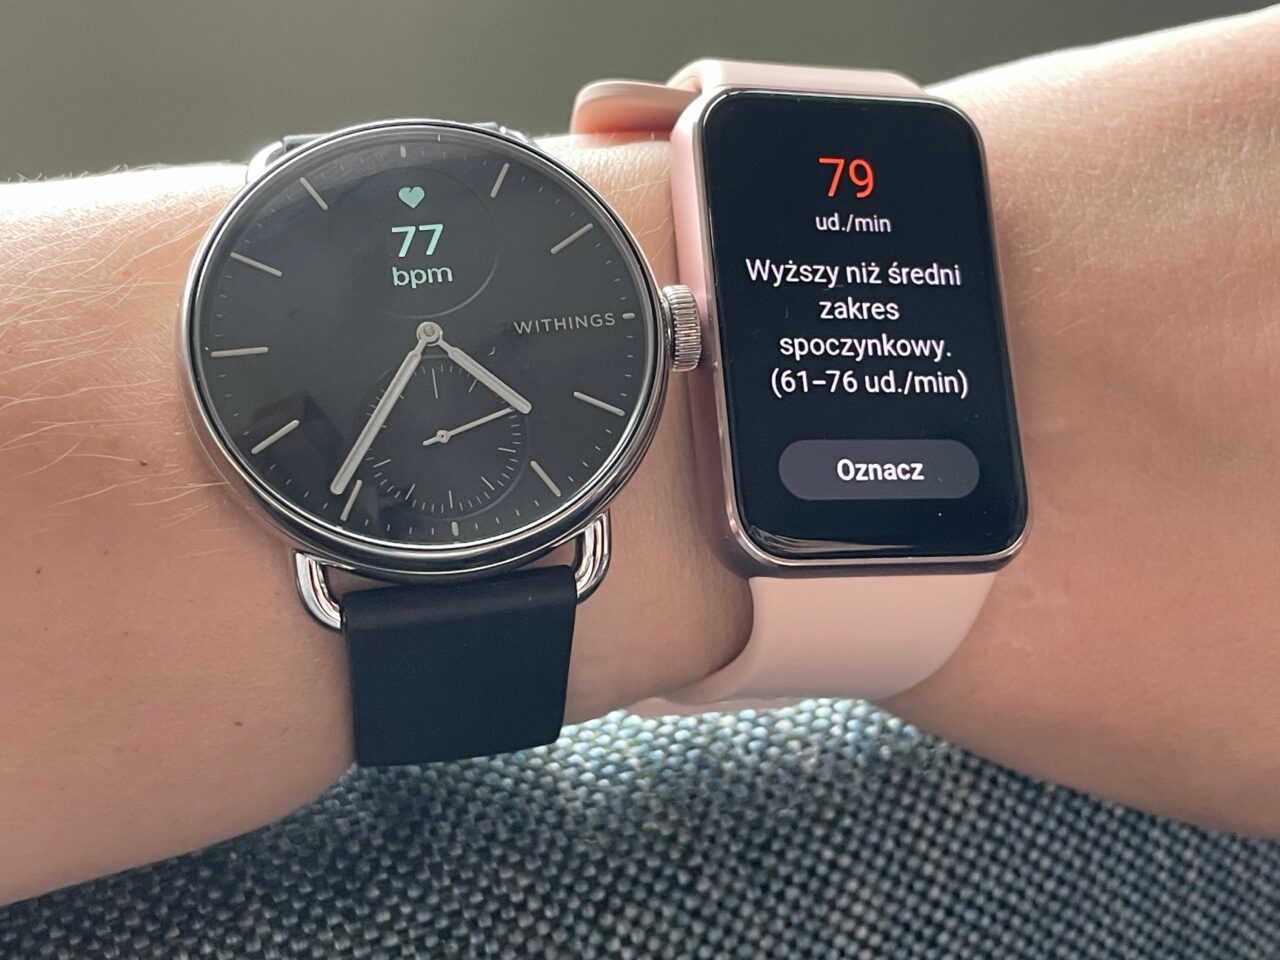 Dwa smartwatche na nadgarstku: zegarek Withings pokazujący tętno 77 bpm i smartwatch w różowej obudowie z ekranem pokazującym tętno 79 uderzeń na minutę i napis "Wyższy niż średni zakres spoczynkowy".